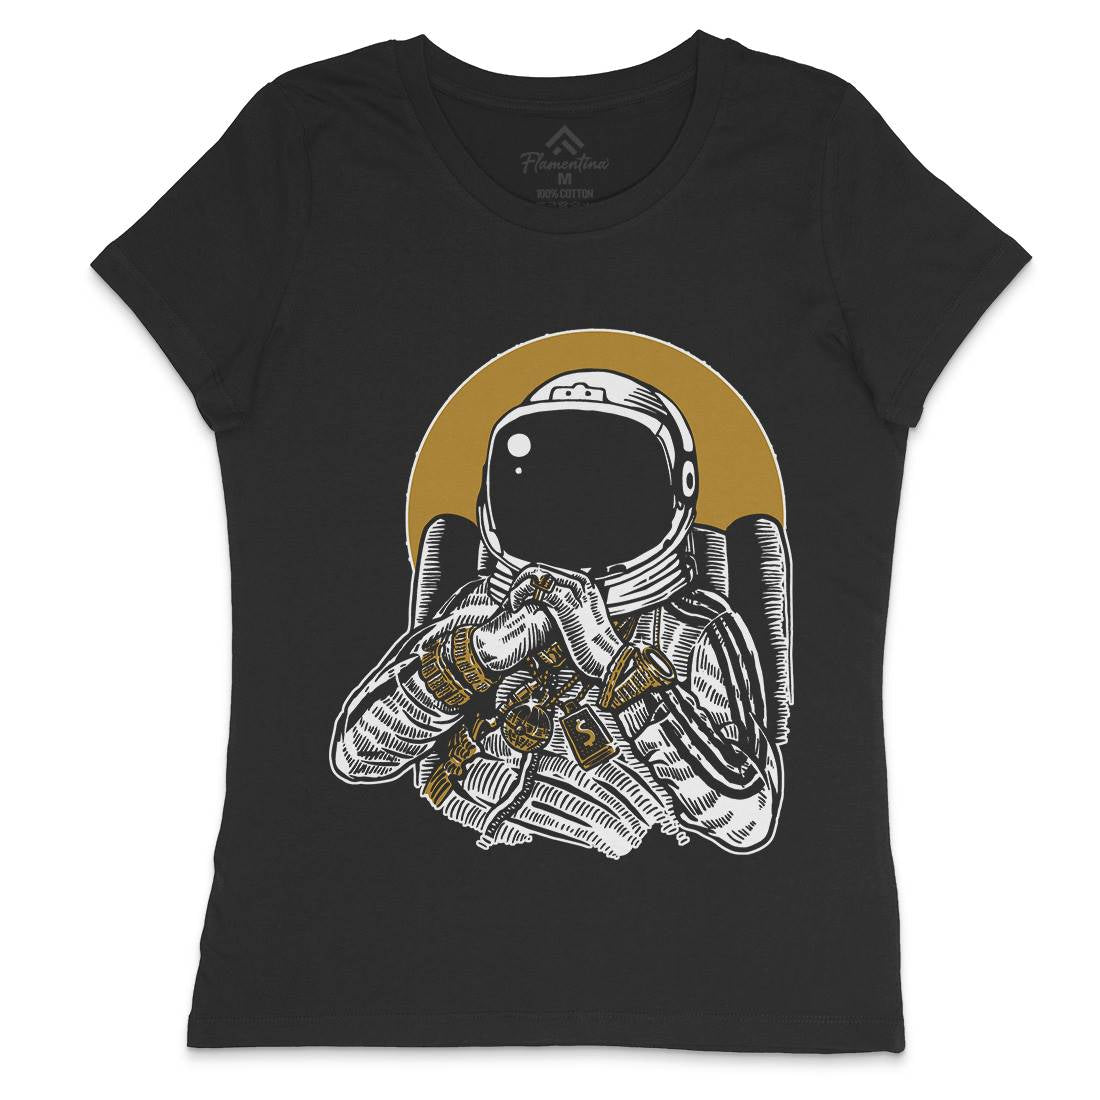 Dj Womens Crew Neck T-Shirt Space A575